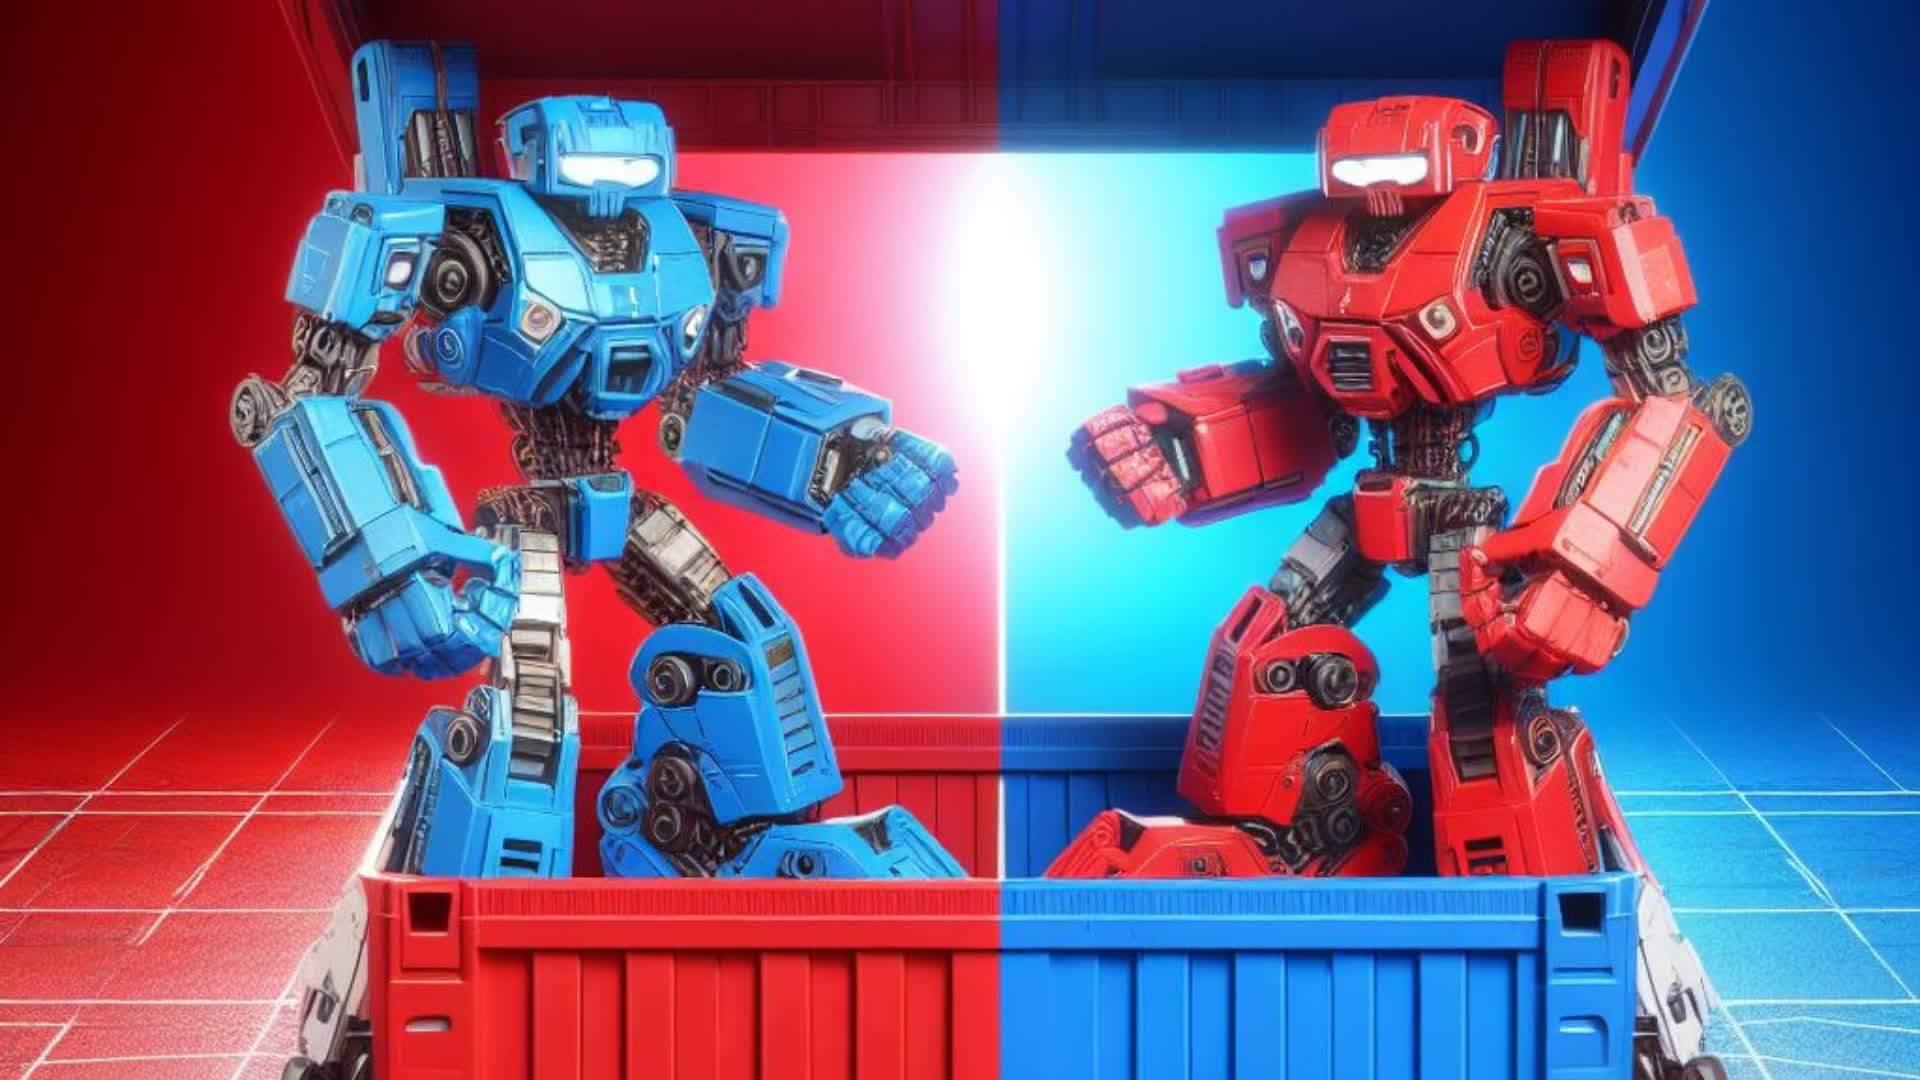 Crazy Red vs Blue Warfare